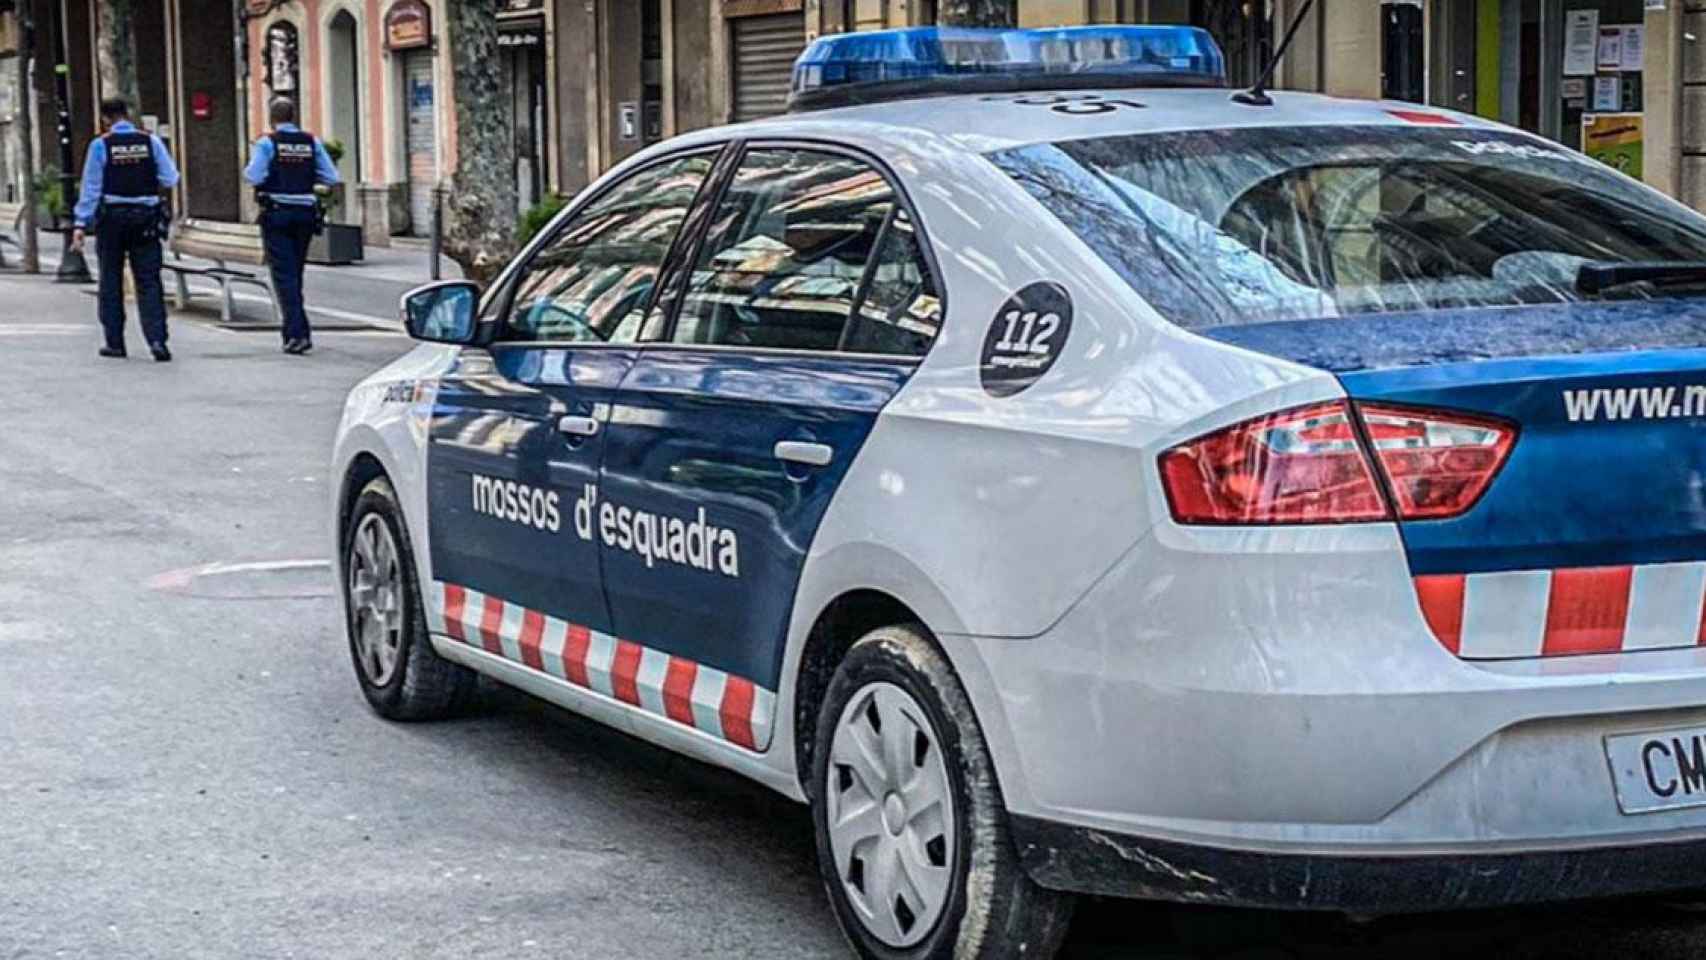 Un coche patrulla de los Mossos en Ciutat Vella, donde fue detenido el joven por vender droga / MOSSOS